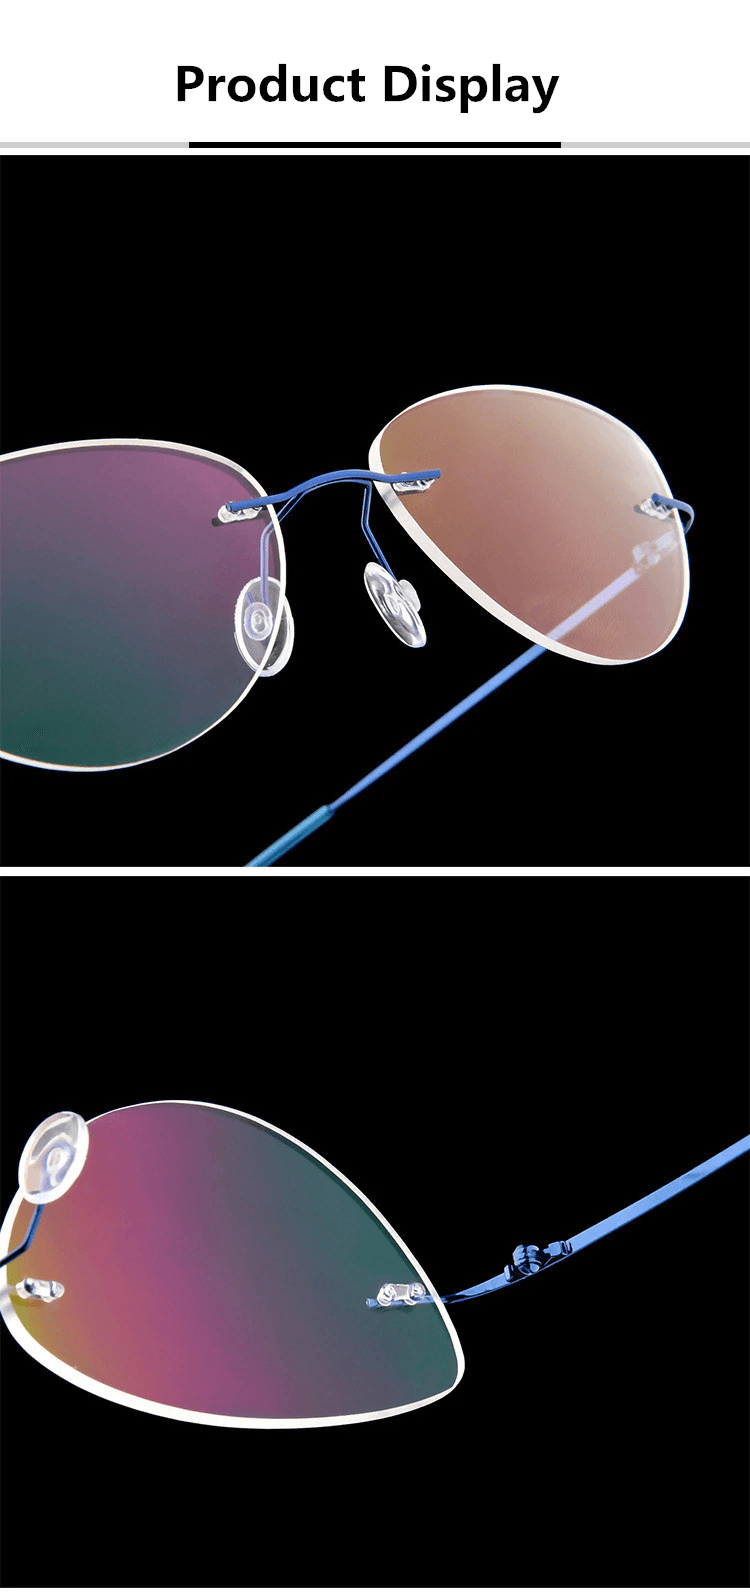 Buy Cat Eye Foldable Ultra-light Memory Computer Glasses Blue light Cat Eye Rimless Glasses for Men Women - Glasses India Online in India